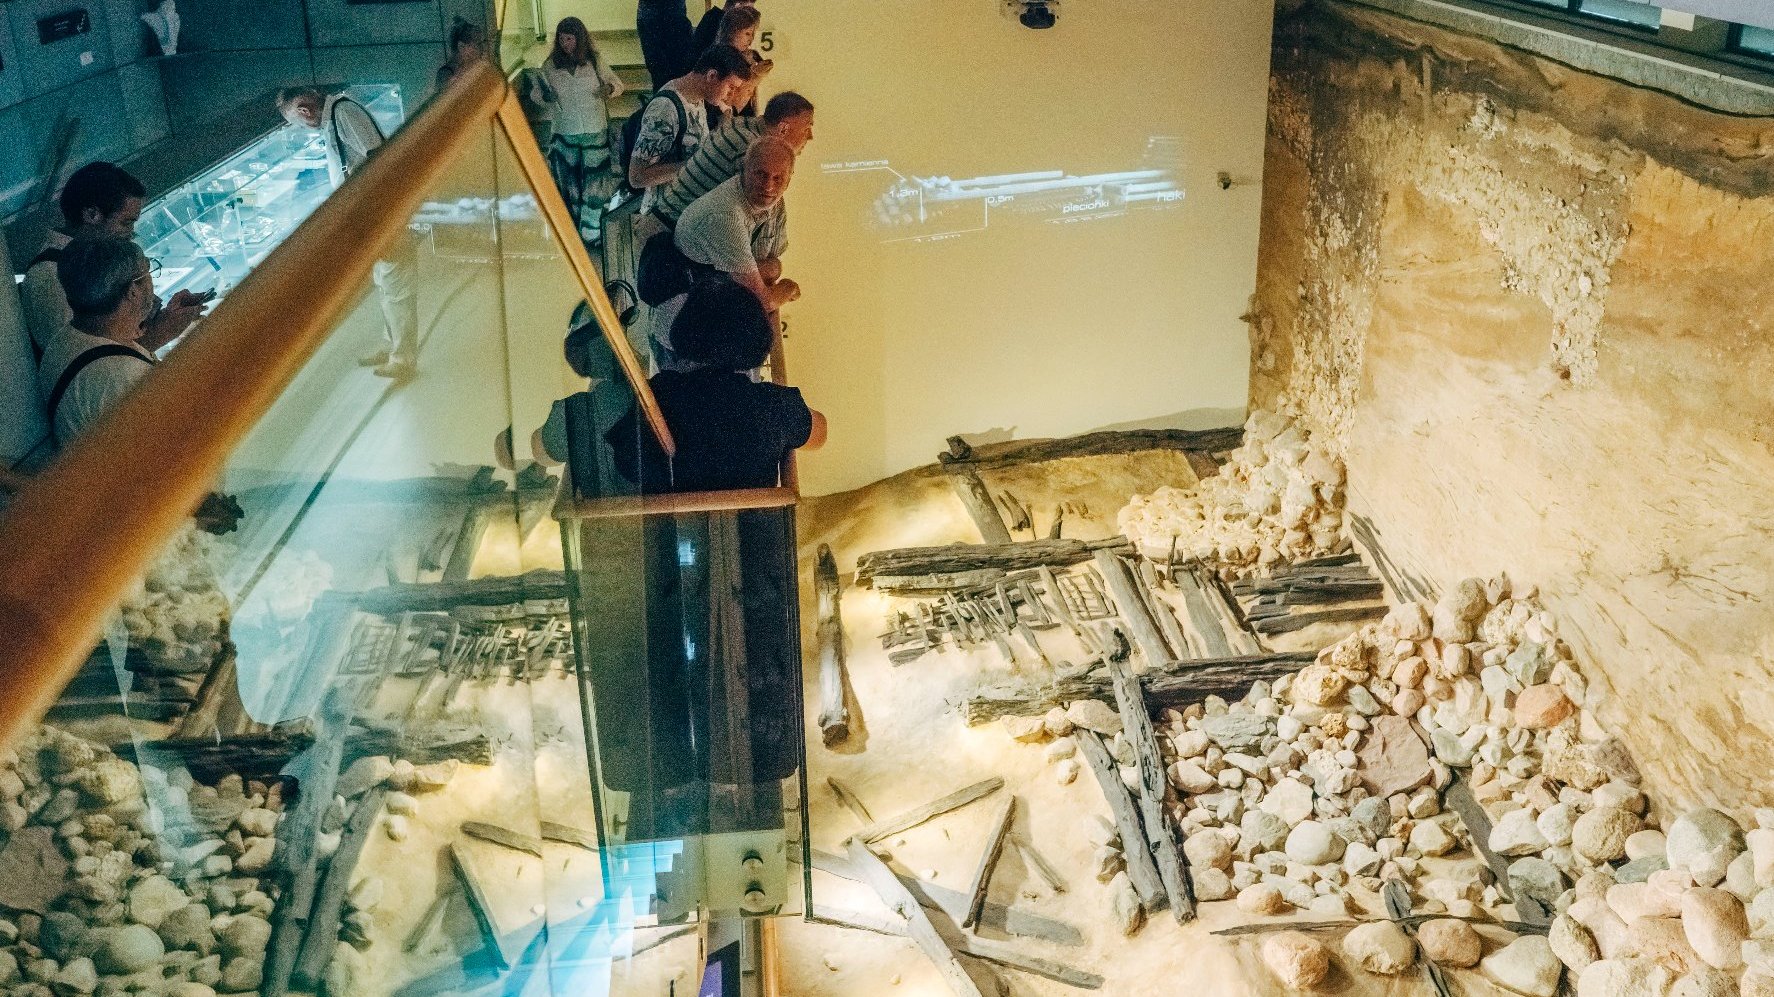 Na zdjęciu ludzie oprowadzani po ekspozycji Genius loci. Stoją na szklanym podeście, pod spodem ruiny, mury.